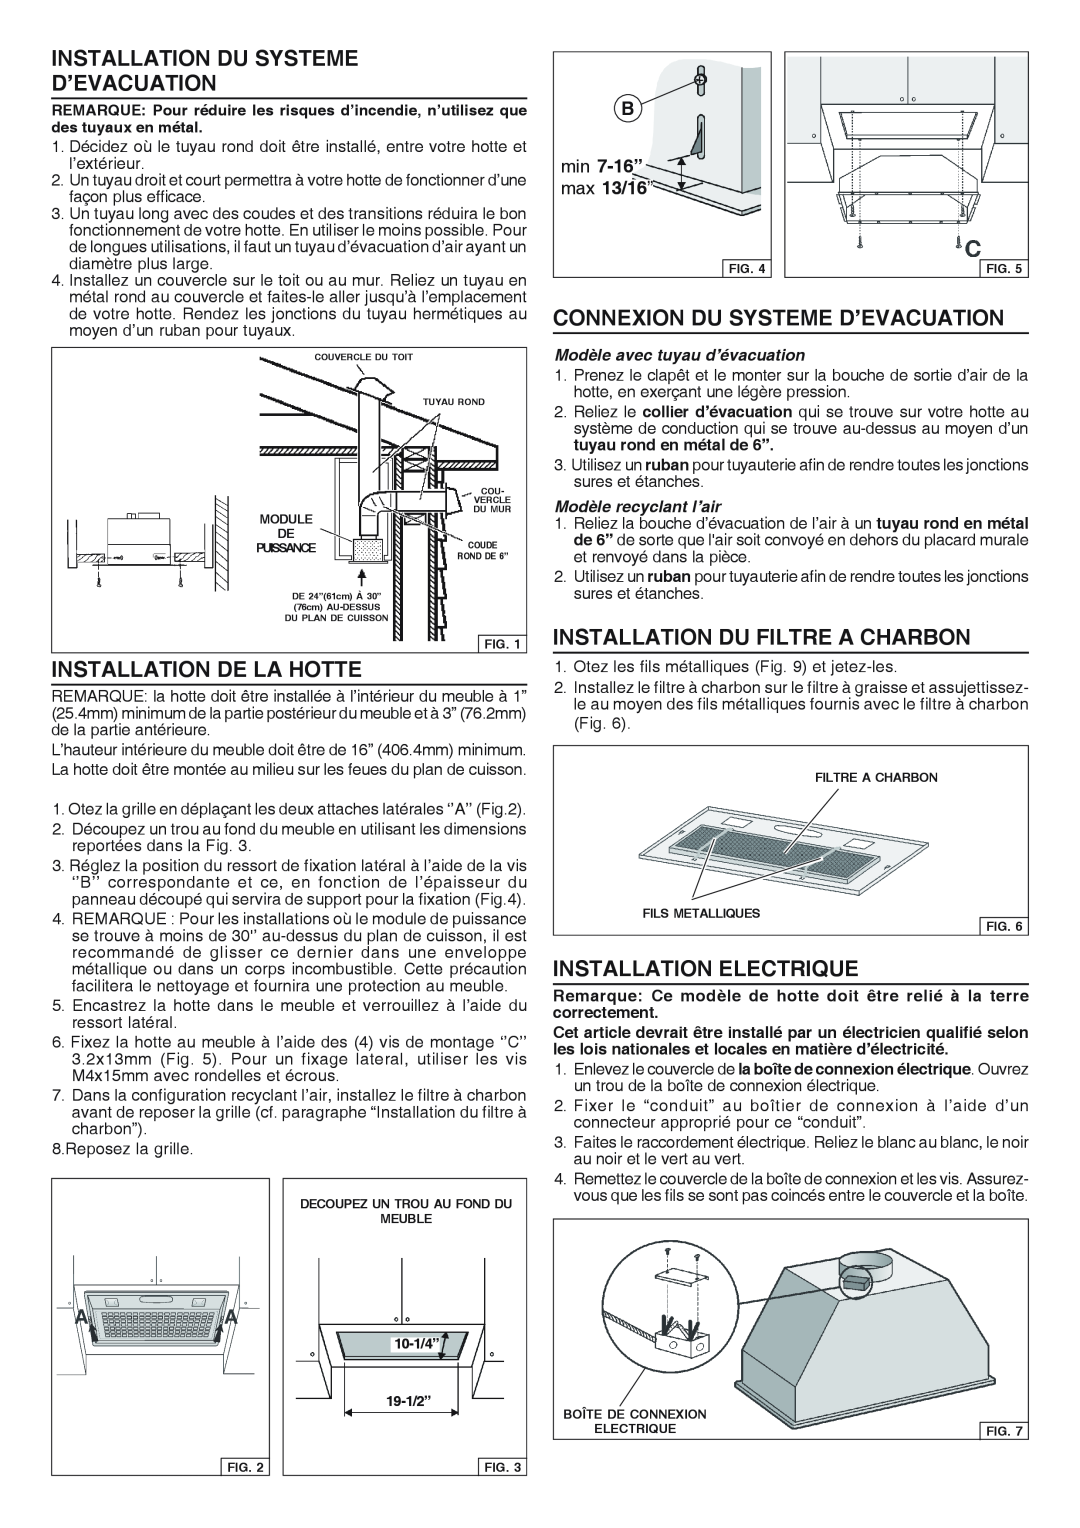 Broan RHVBB20SM manual Installation Du Systeme D’Evacuation, Installation De La Hotte, Connexion Du Systeme D’Evacuation 